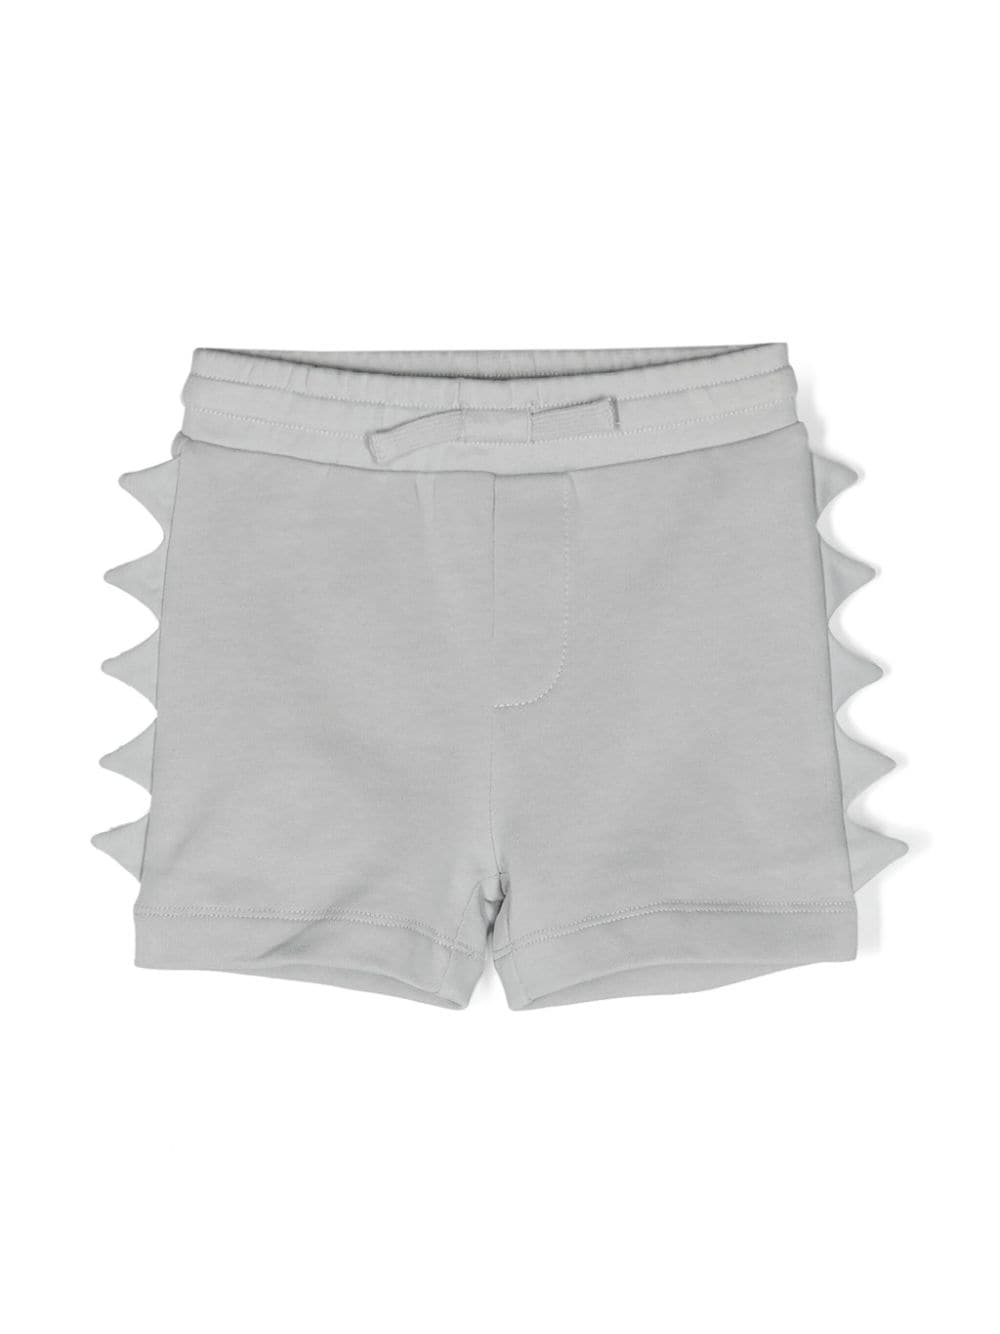 Gray Bermuda shorts for newborns